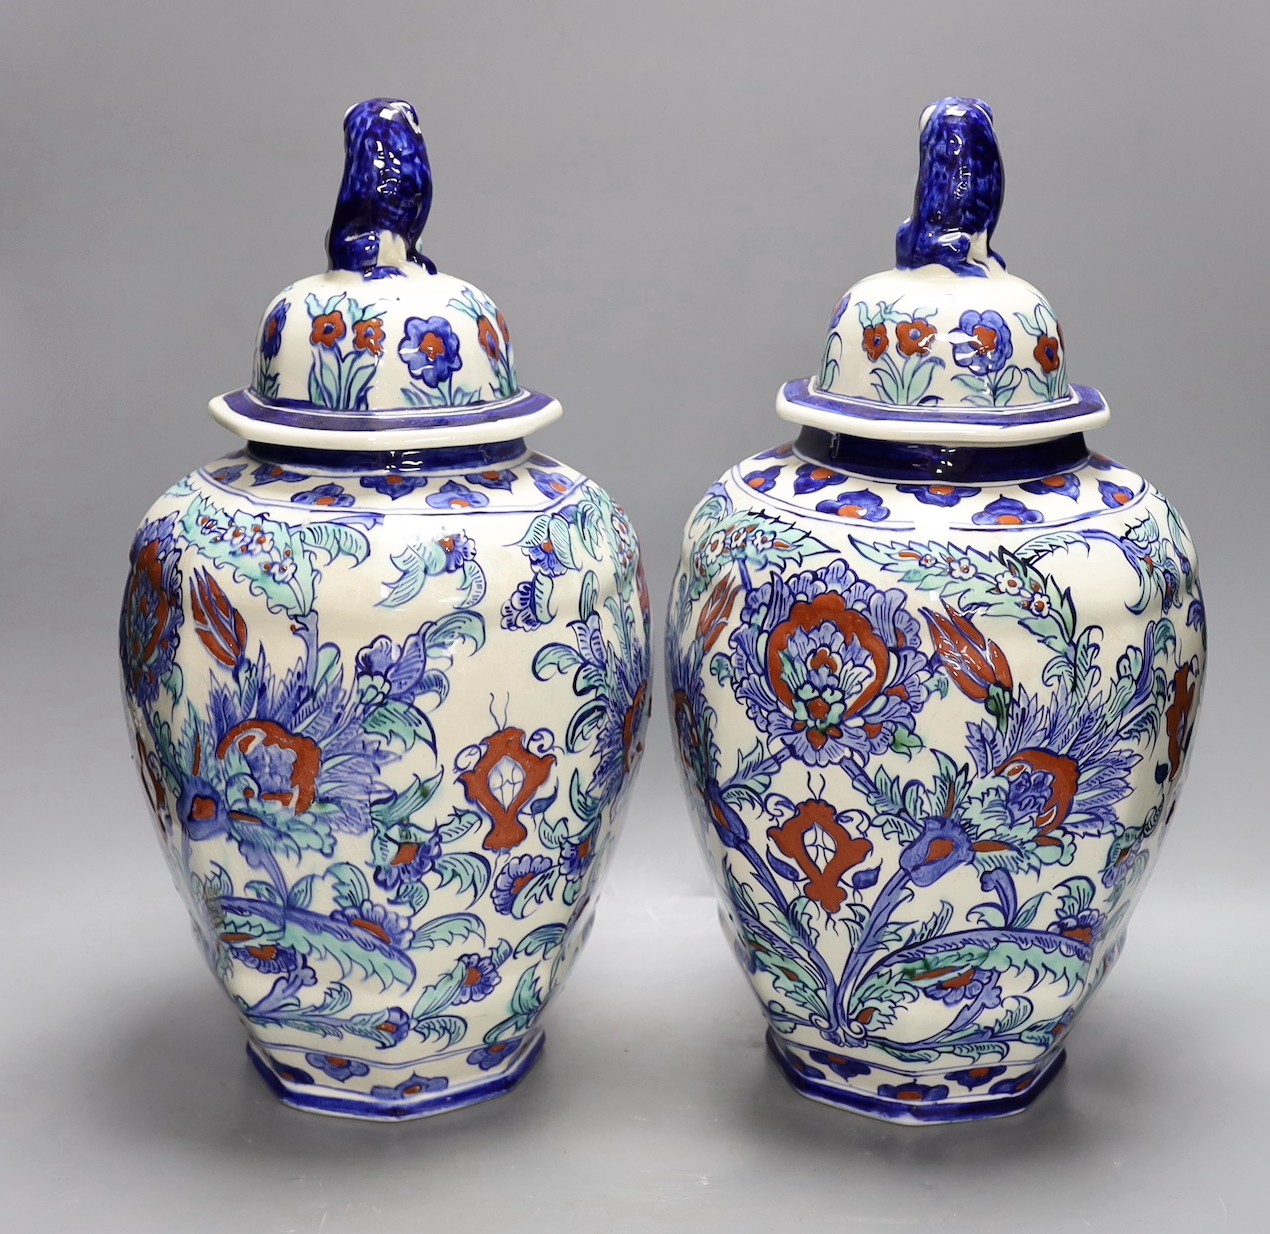 A pair of Belgian keramis jars and covers, 41cm